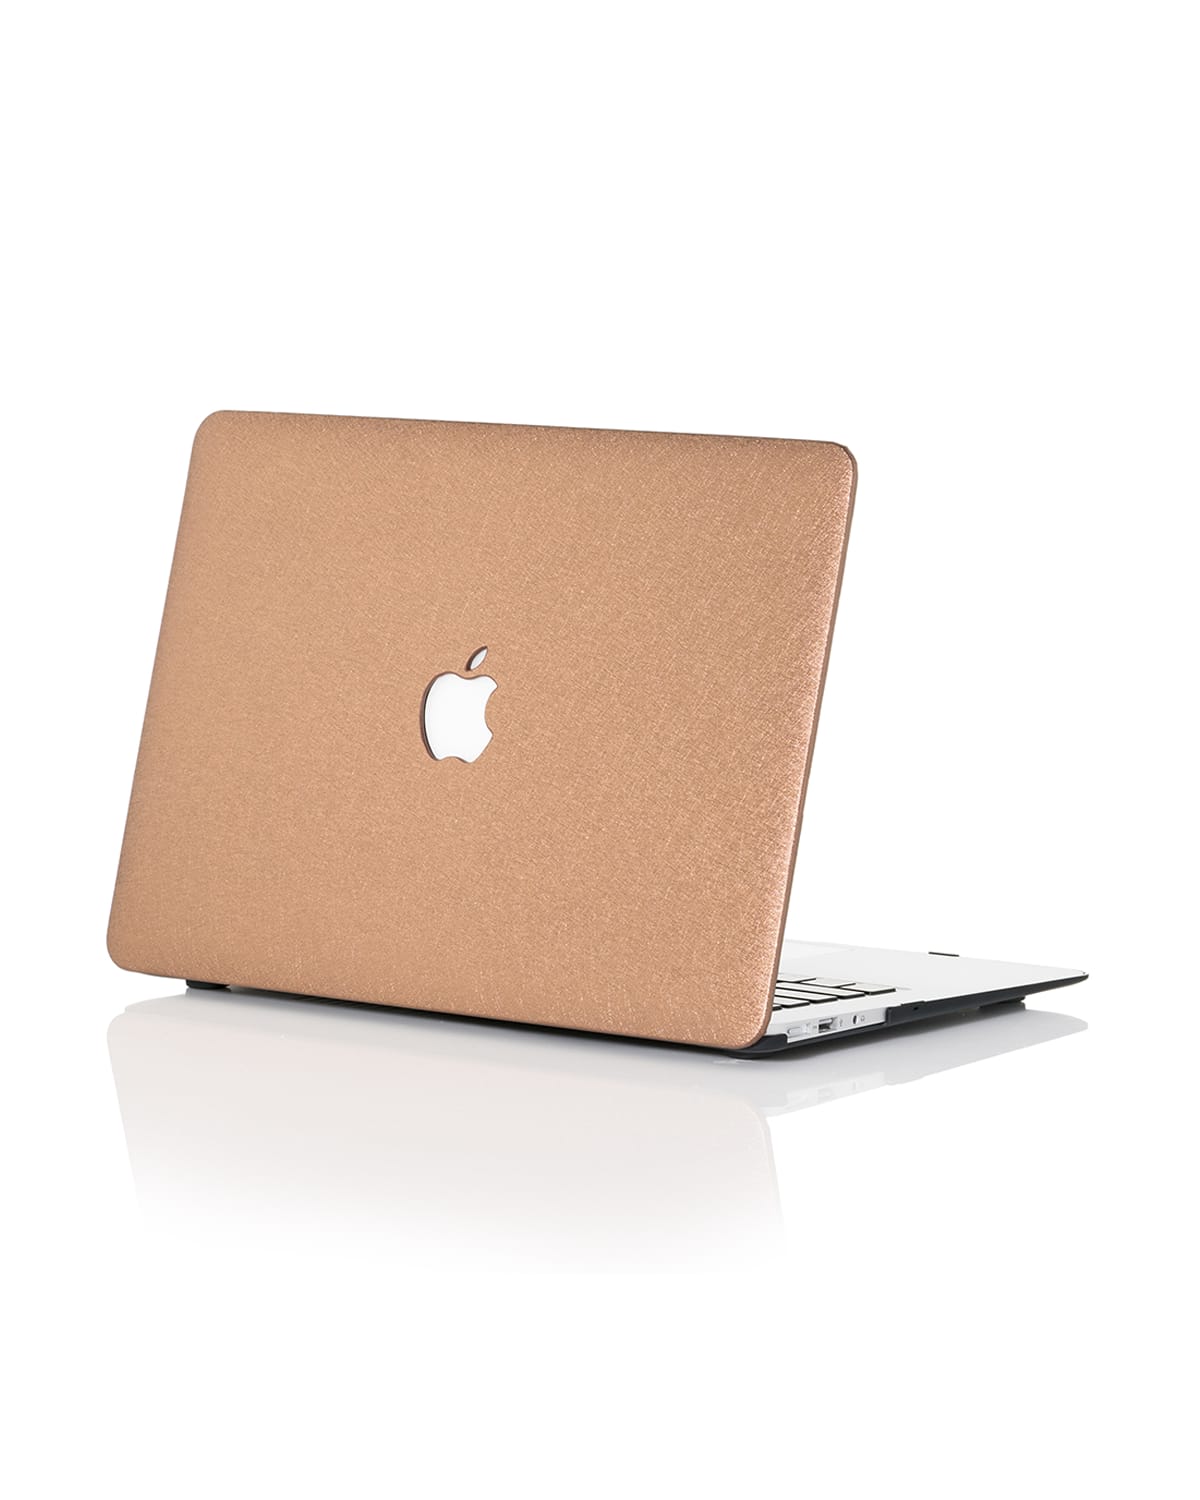 Silky 13" MacBook Pro with TouchBar Case